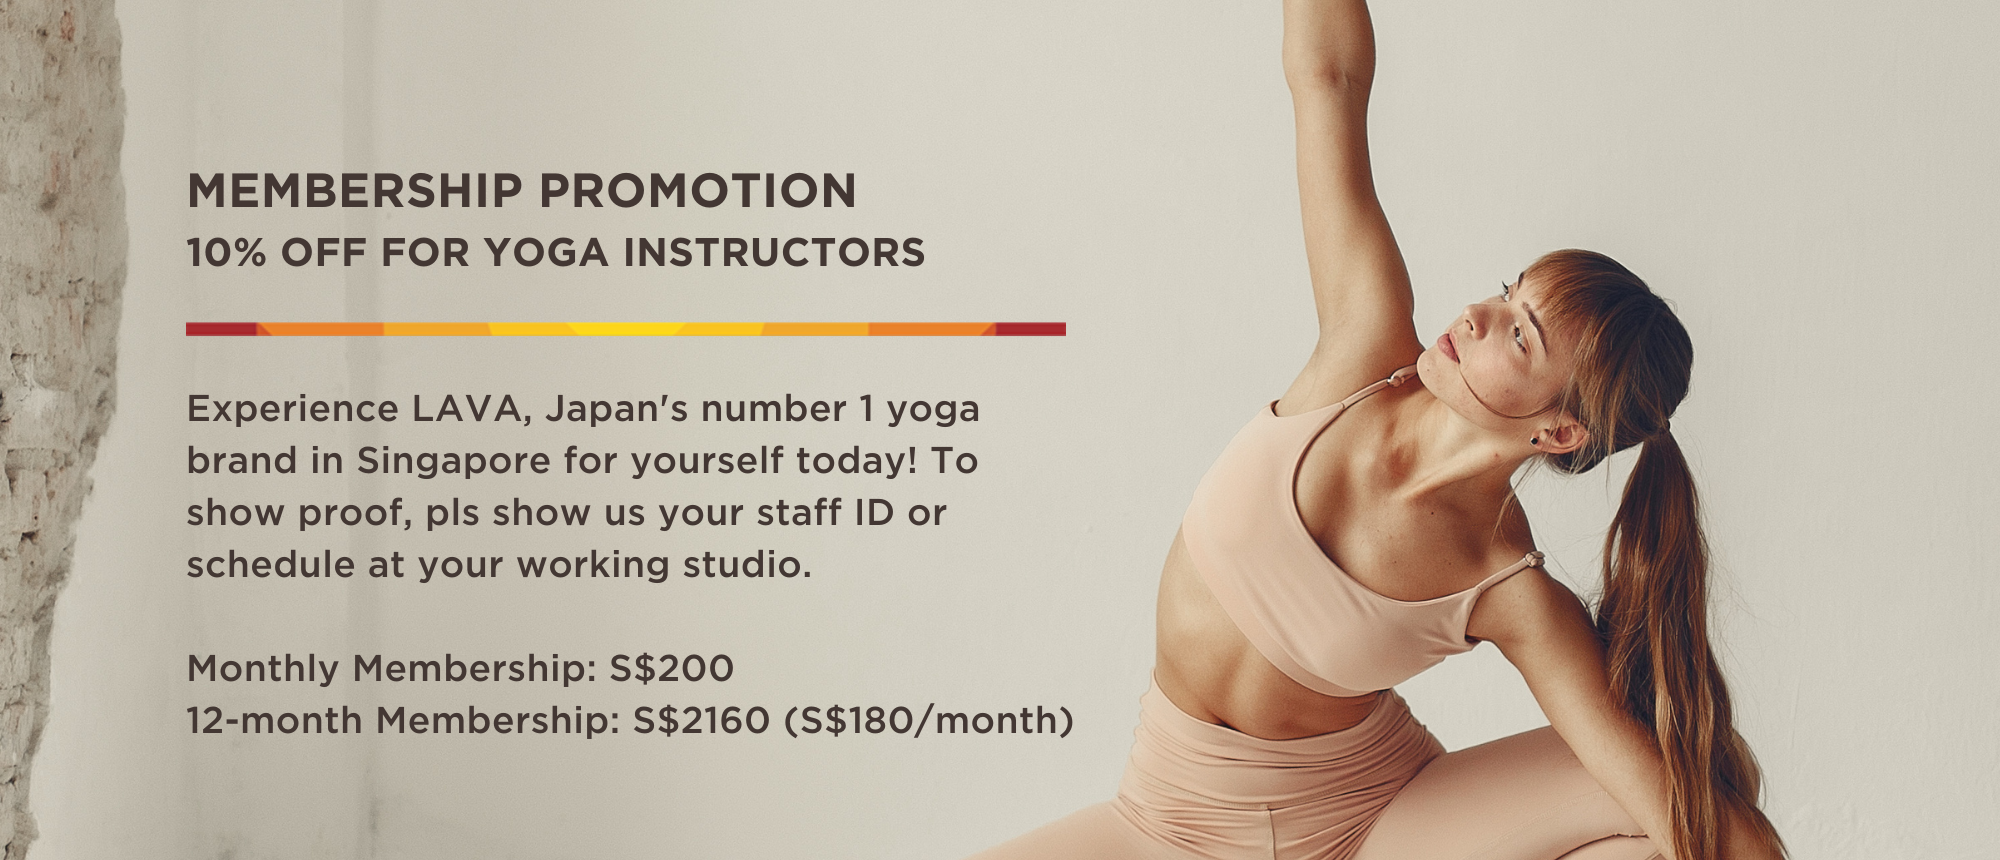 Membership for yoga instructors